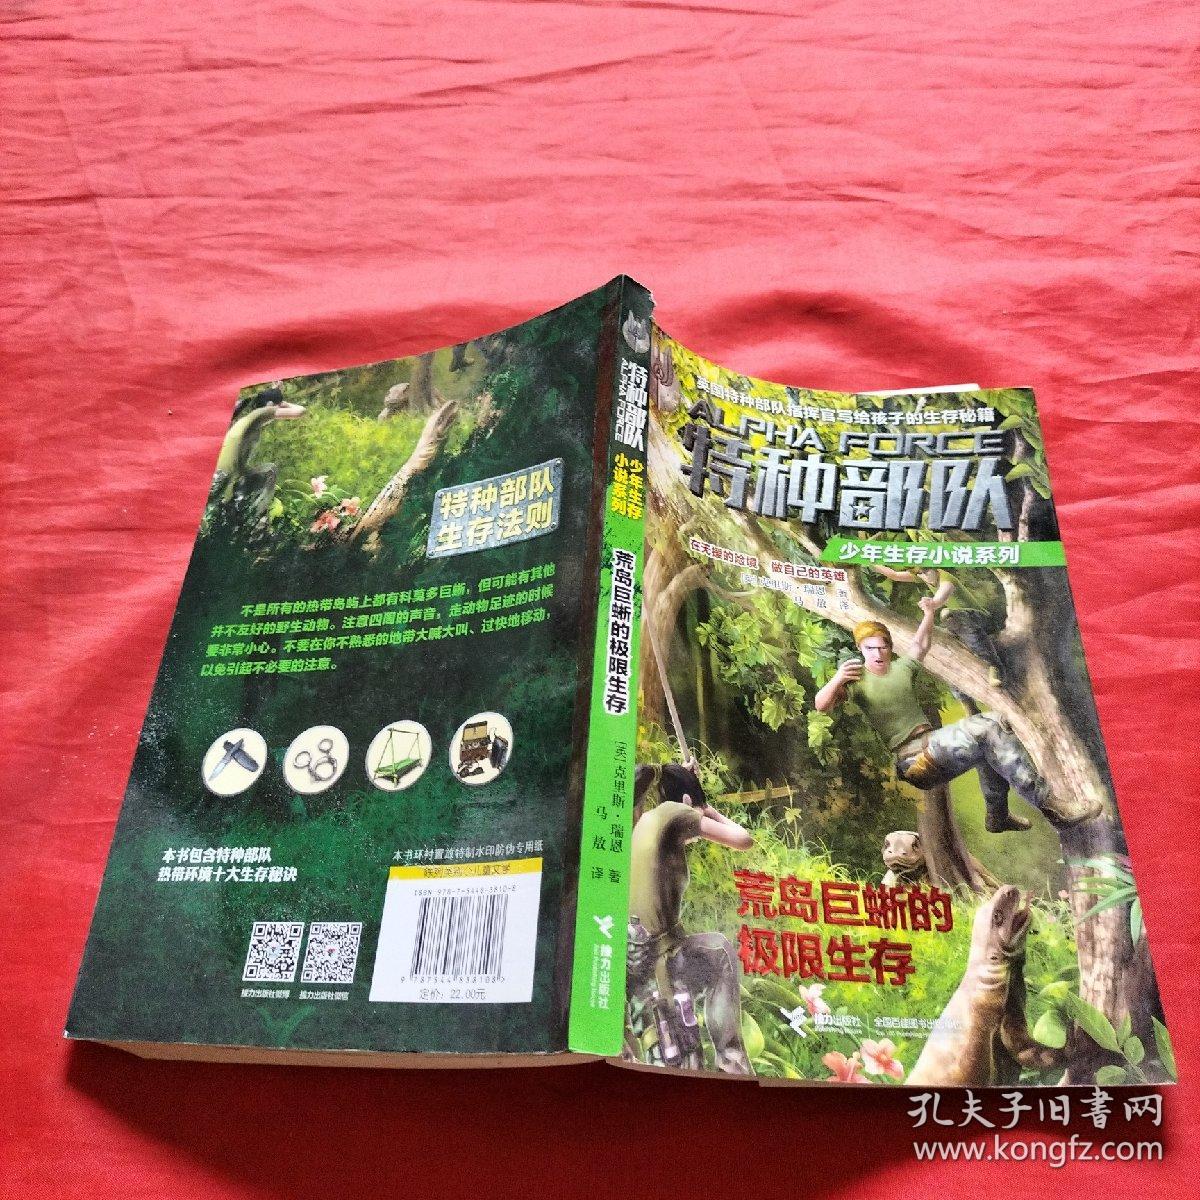 特种部队少年生存小说系列：荒岛巨蜥的极限生存（在无援的险境，做自己的英雄！英国特种部队指挥官写给孩子的生存秘籍！）